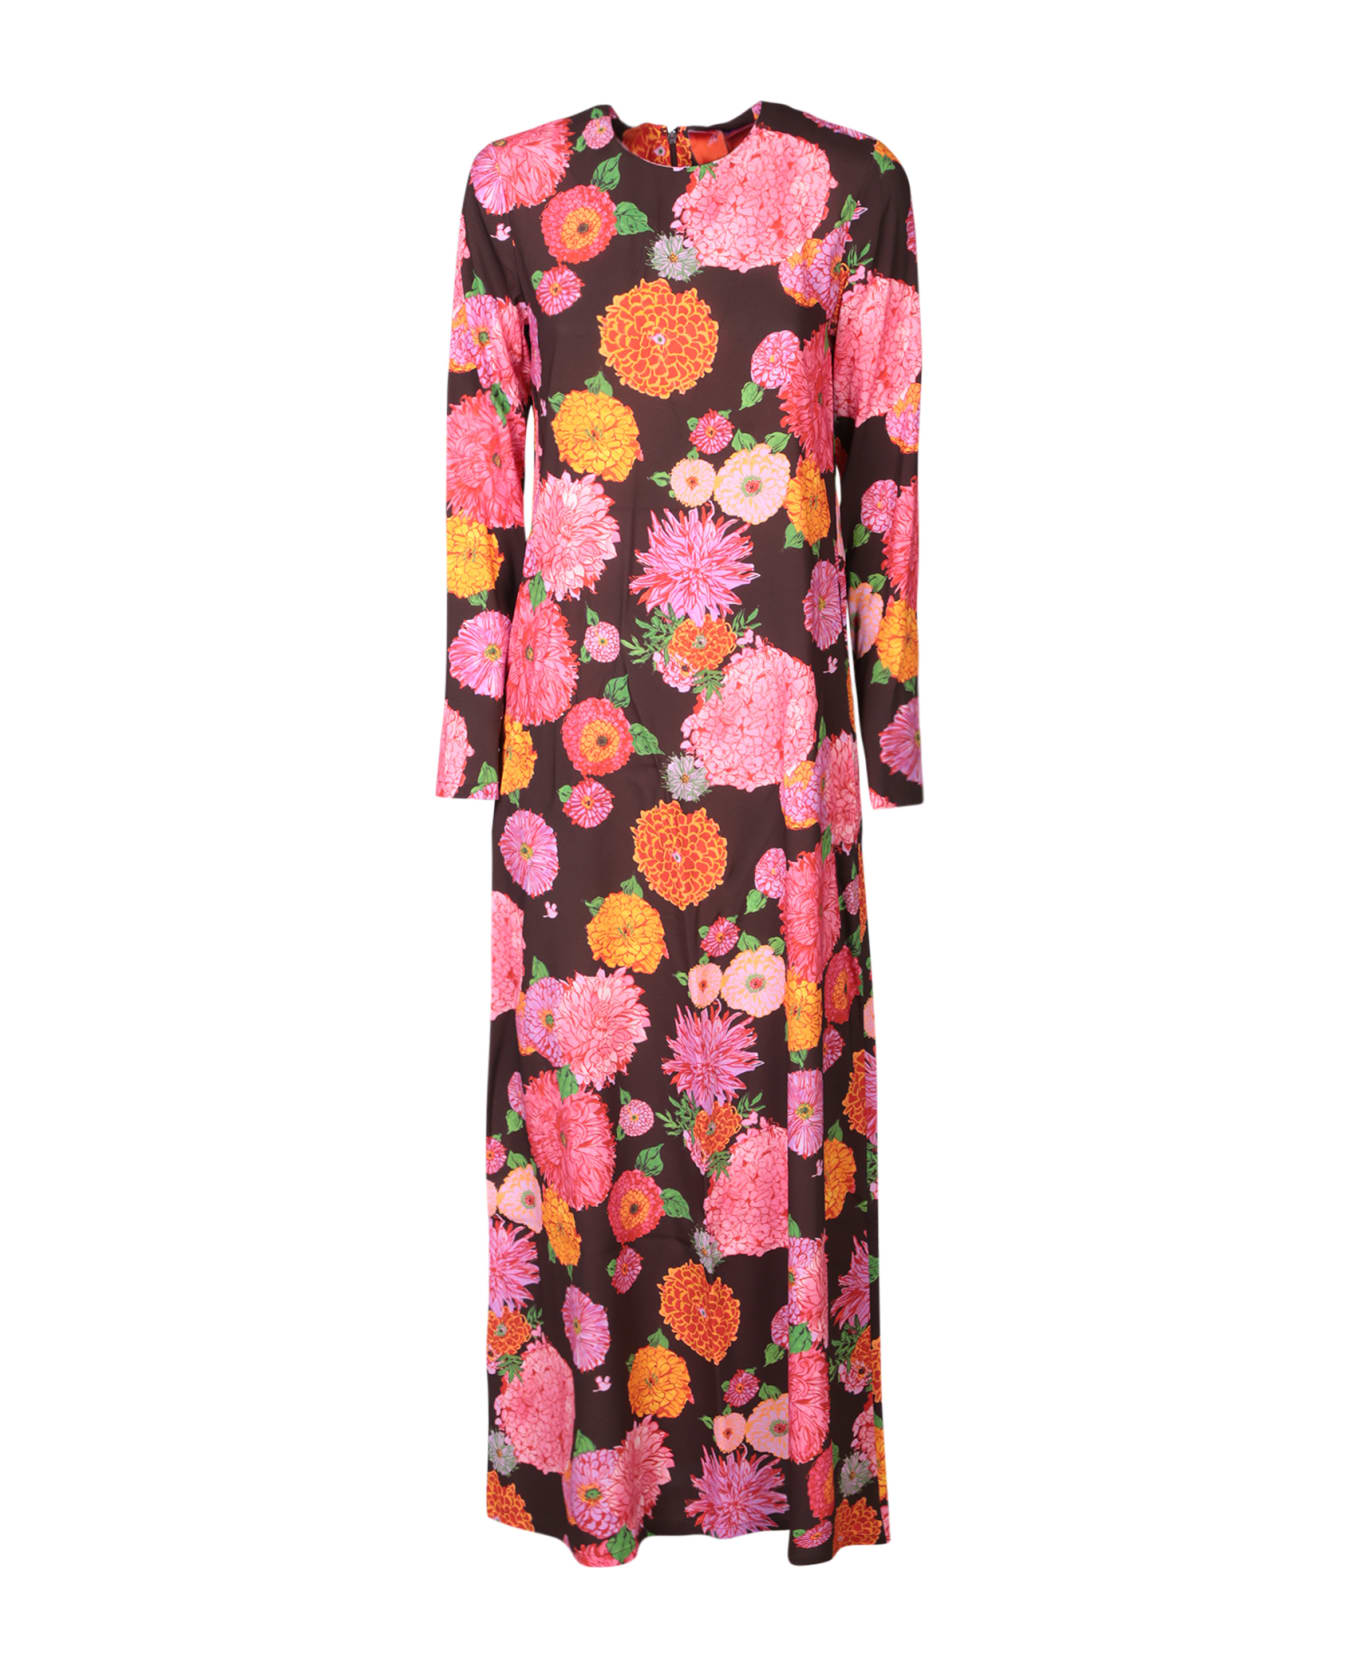 La DoubleJ Long Sleeve Swing Dress Brown/multicolor | italist, ALWAYS ...